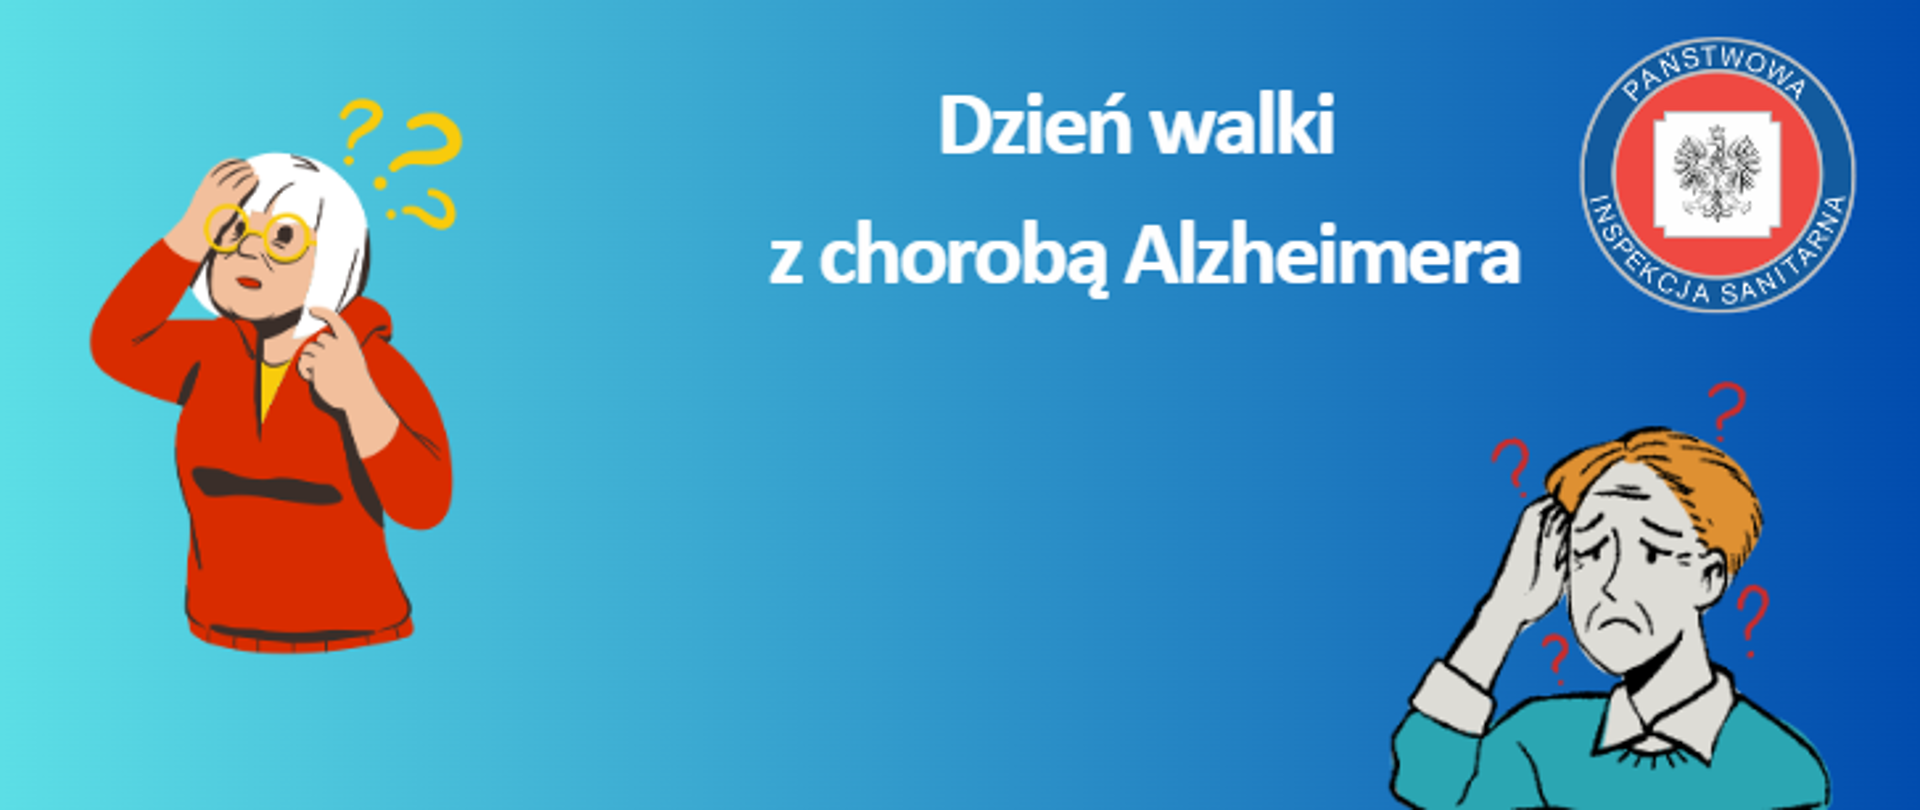 Grafika przedstawia osoby mające trudności z pamięcią, hasło przewodnie dotyczące walki z chorobą Alzheimera oraz logo inspekcji sanitarnej